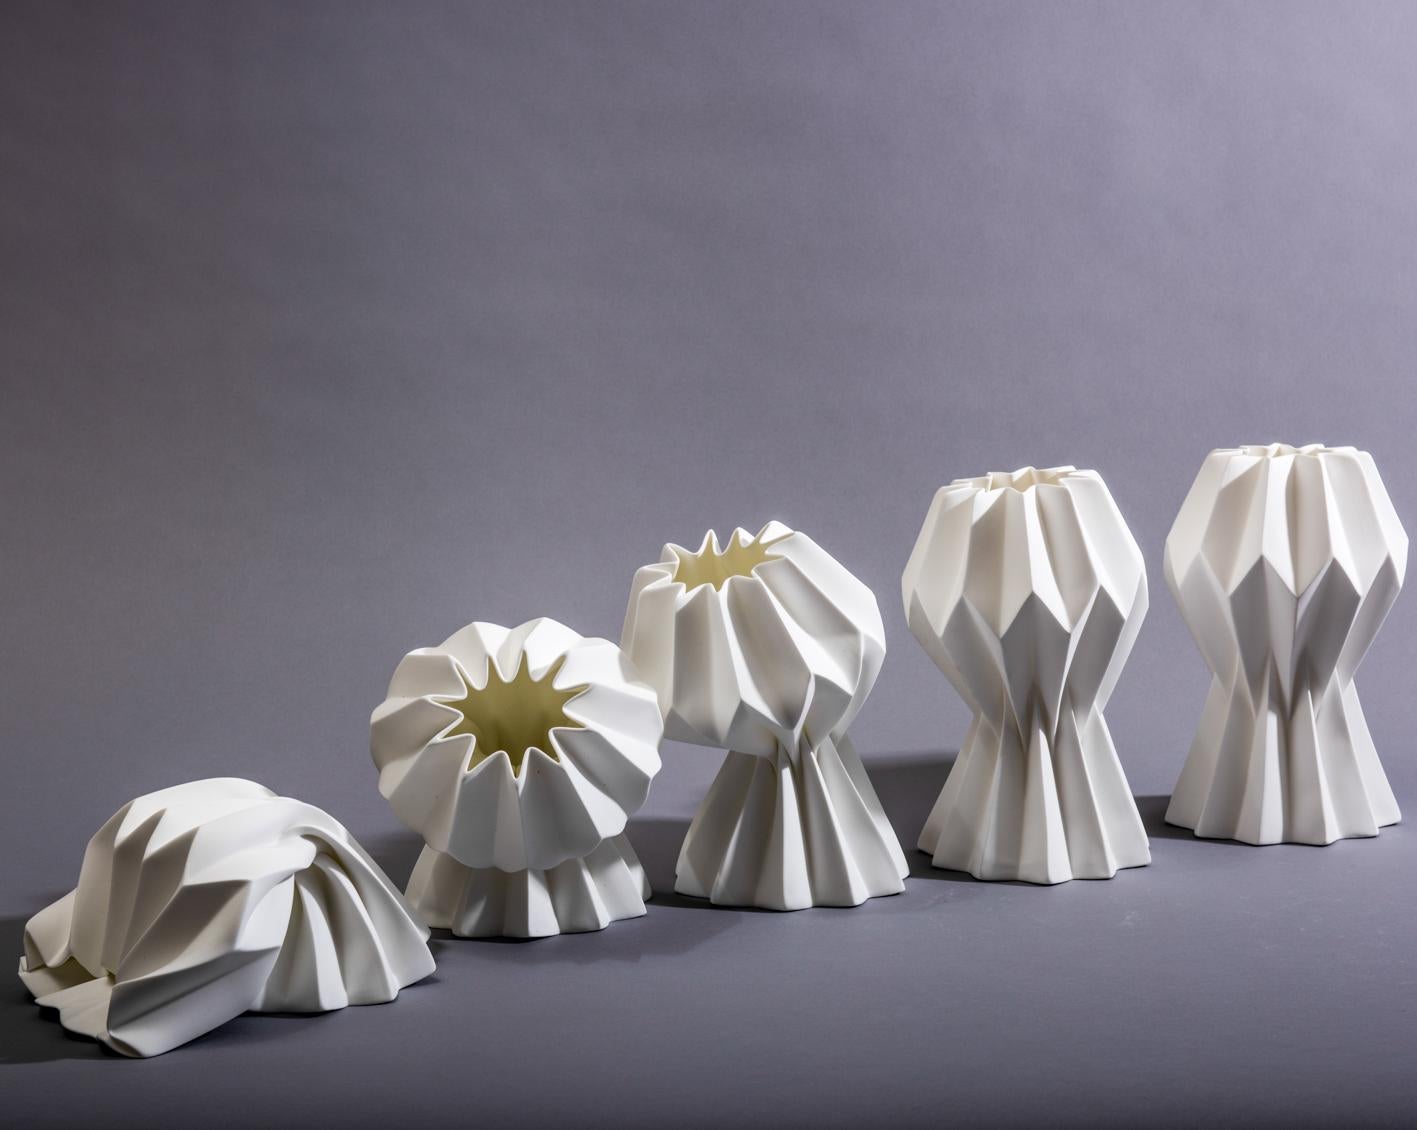 “Slump” Contemporary Origami Ceramic Vase by Studio Morison, No Slump Variation 6